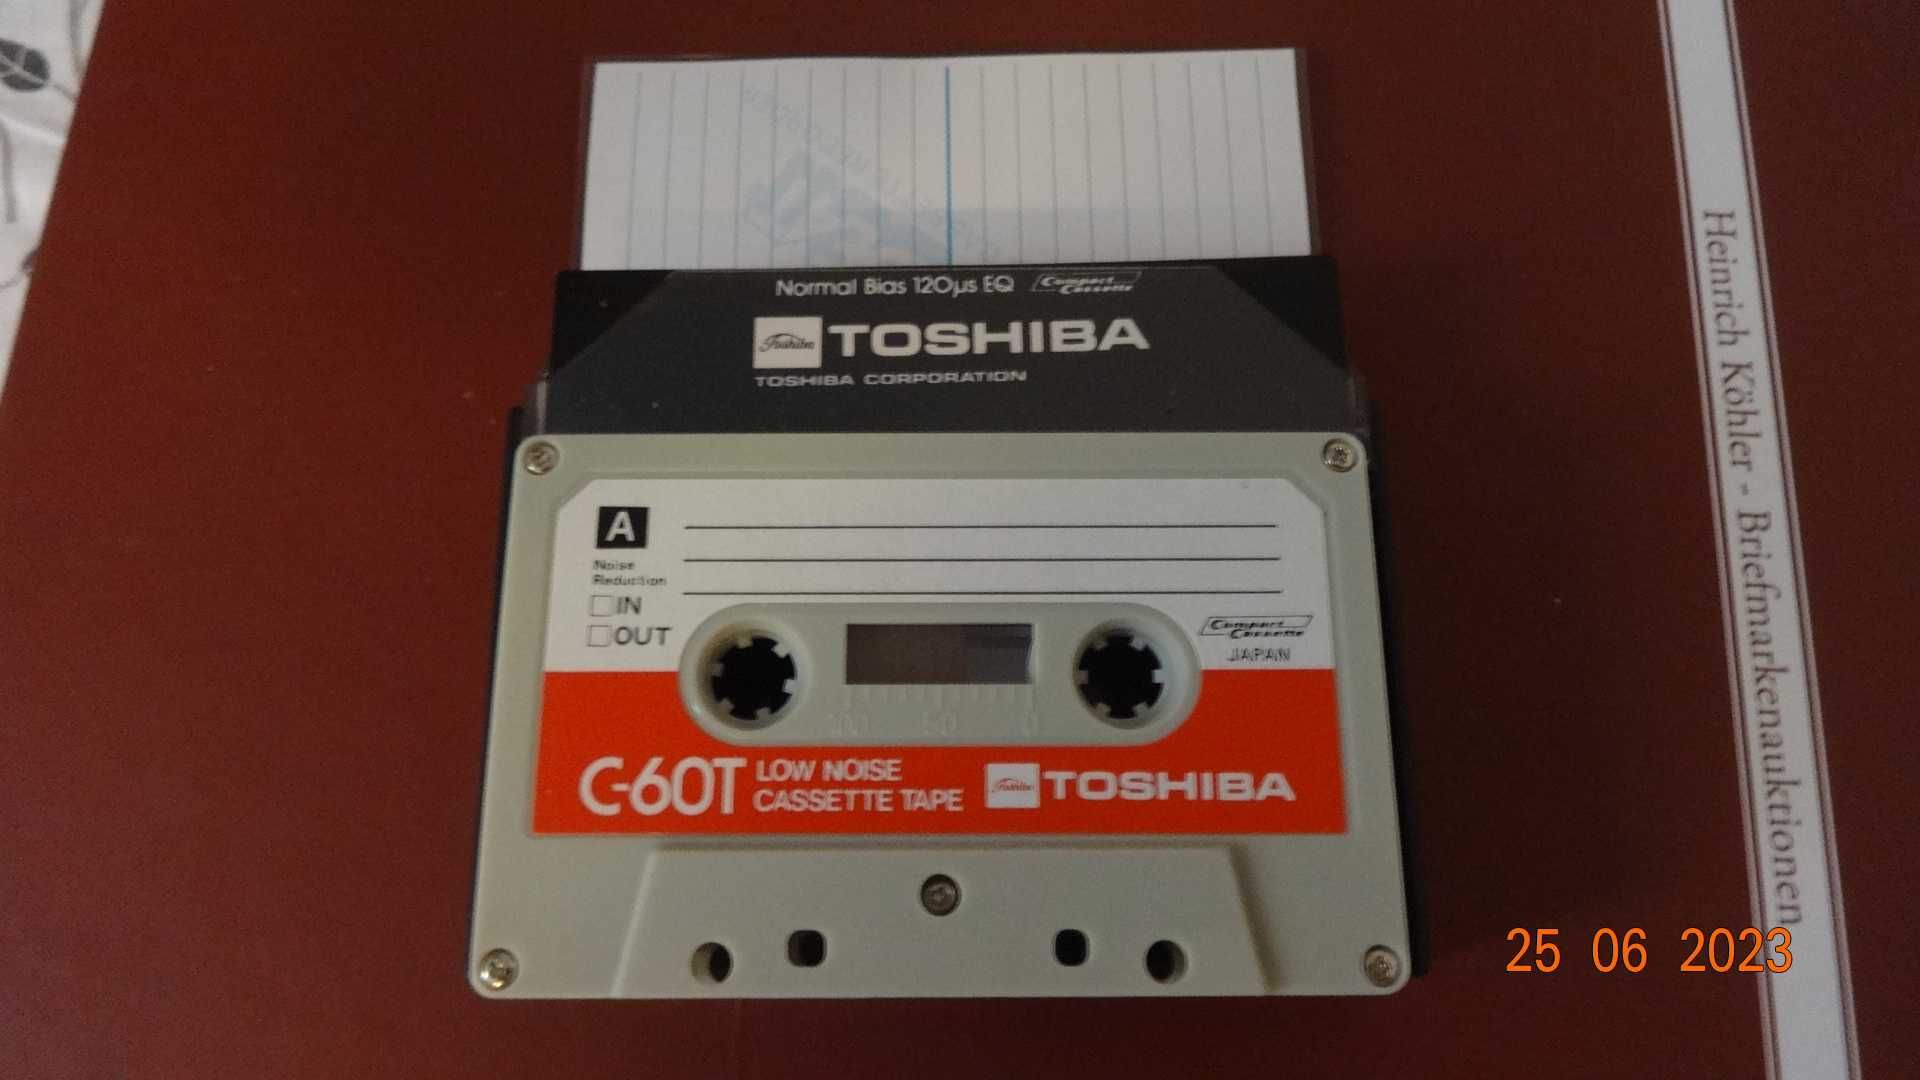 5 szt Toshiba C-60T audio kasety vintage 1973 rok (Japan) Nowa